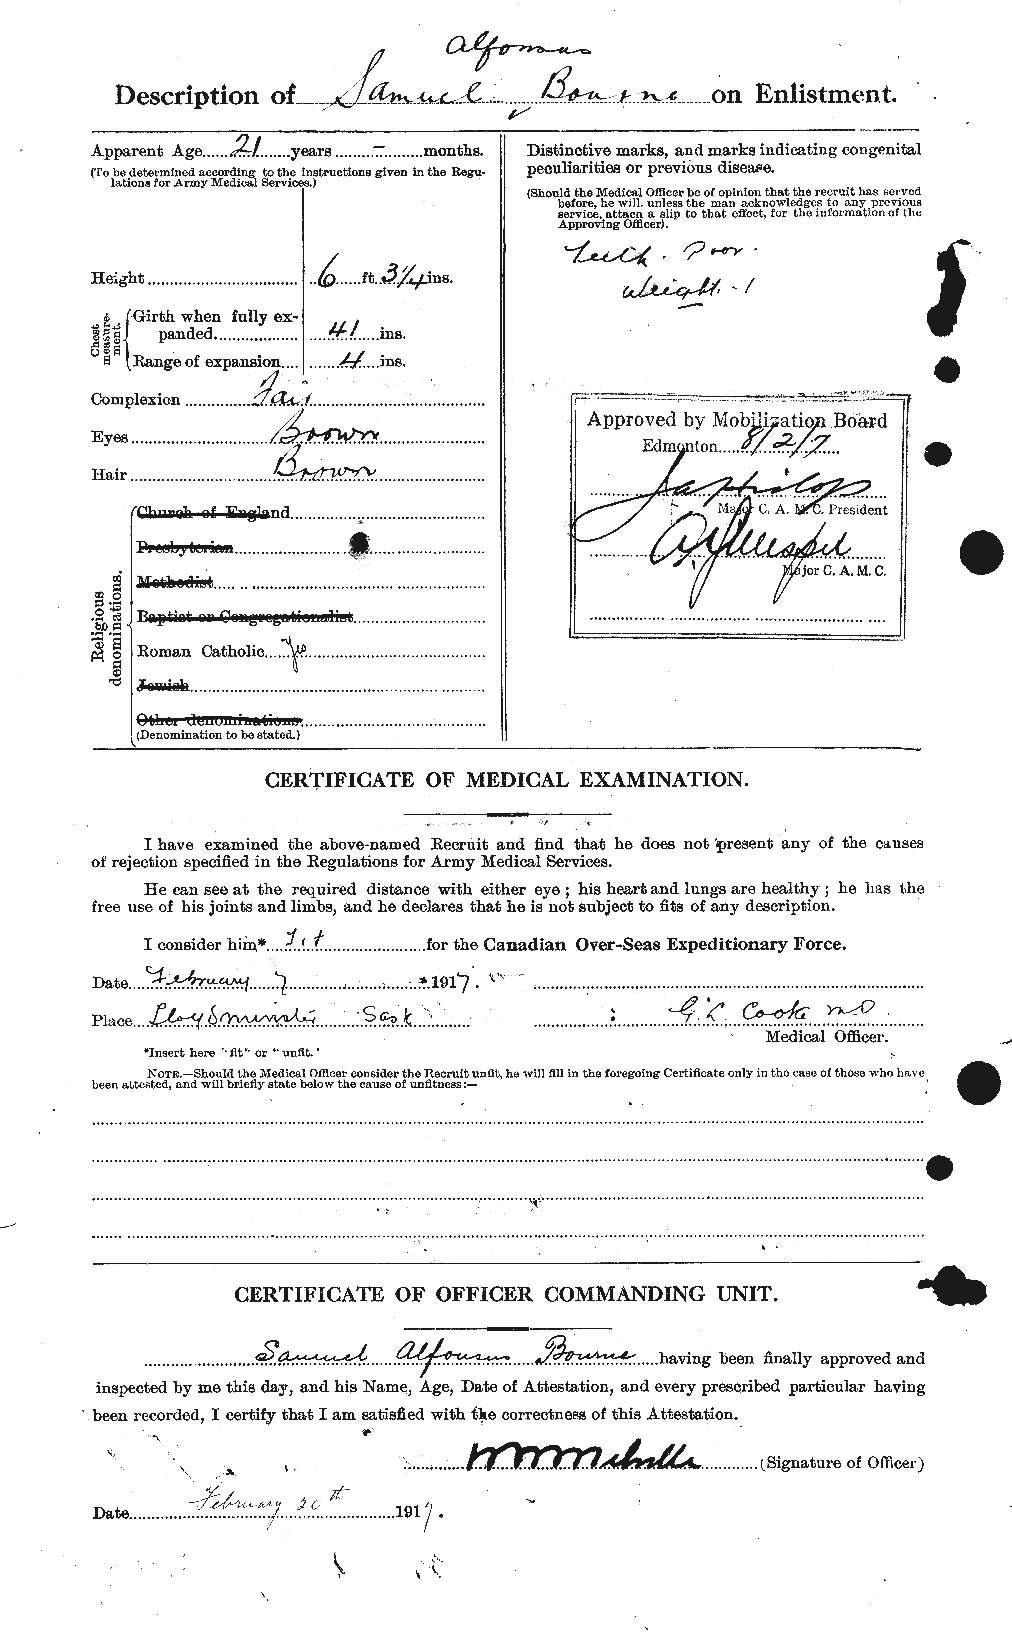 Dossiers du Personnel de la Première Guerre mondiale - CEC 254147b